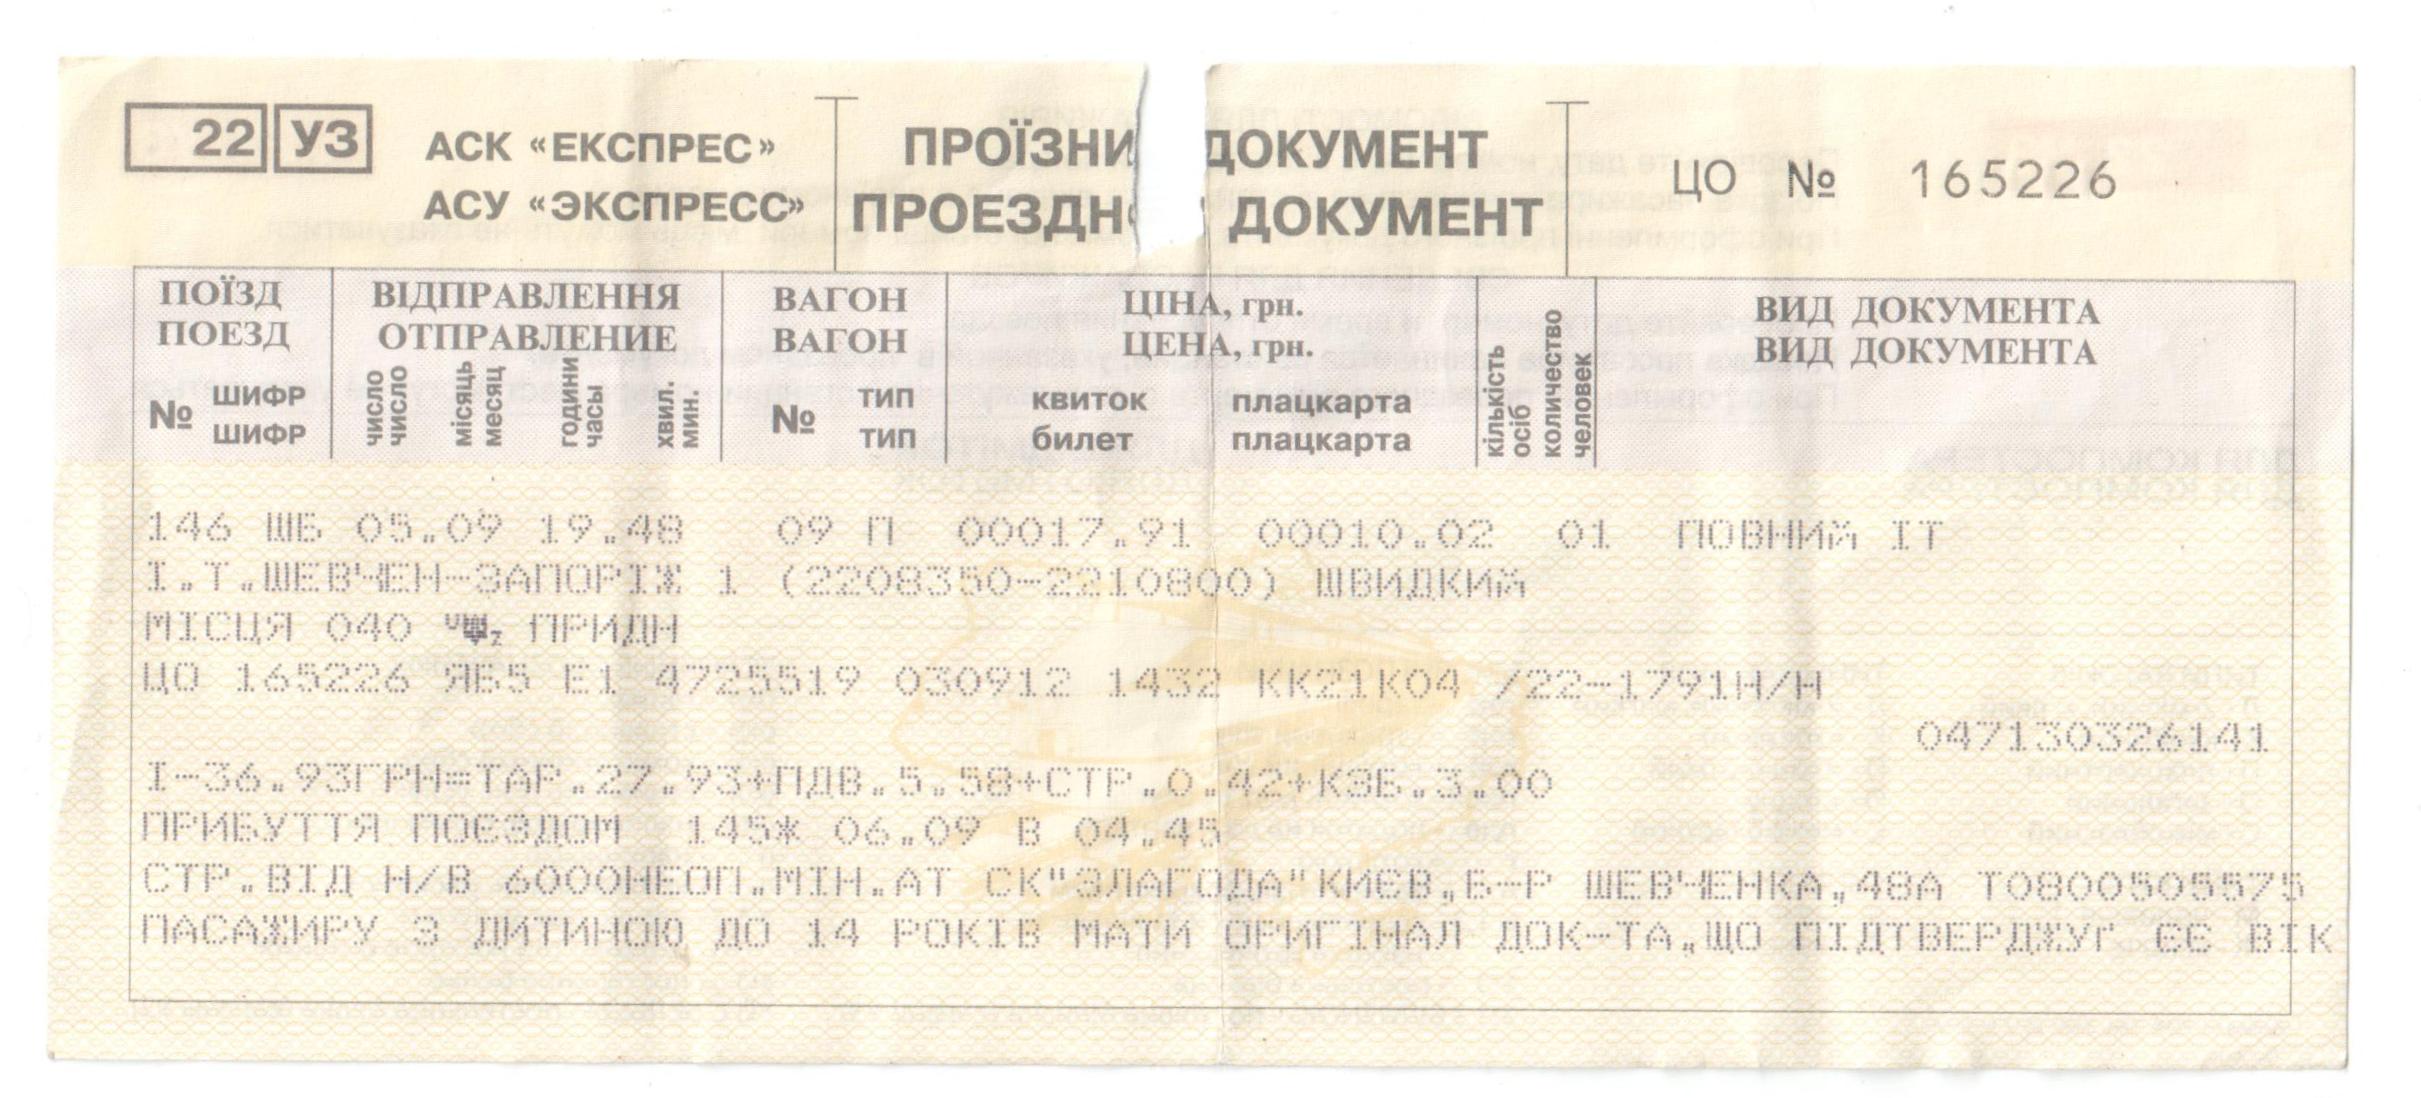 Купить билет на поезд нижний тагил. Билет на поезд. Купейный билет на поезд. Железнодорожный билет СССР. Старинный билет на поезд.